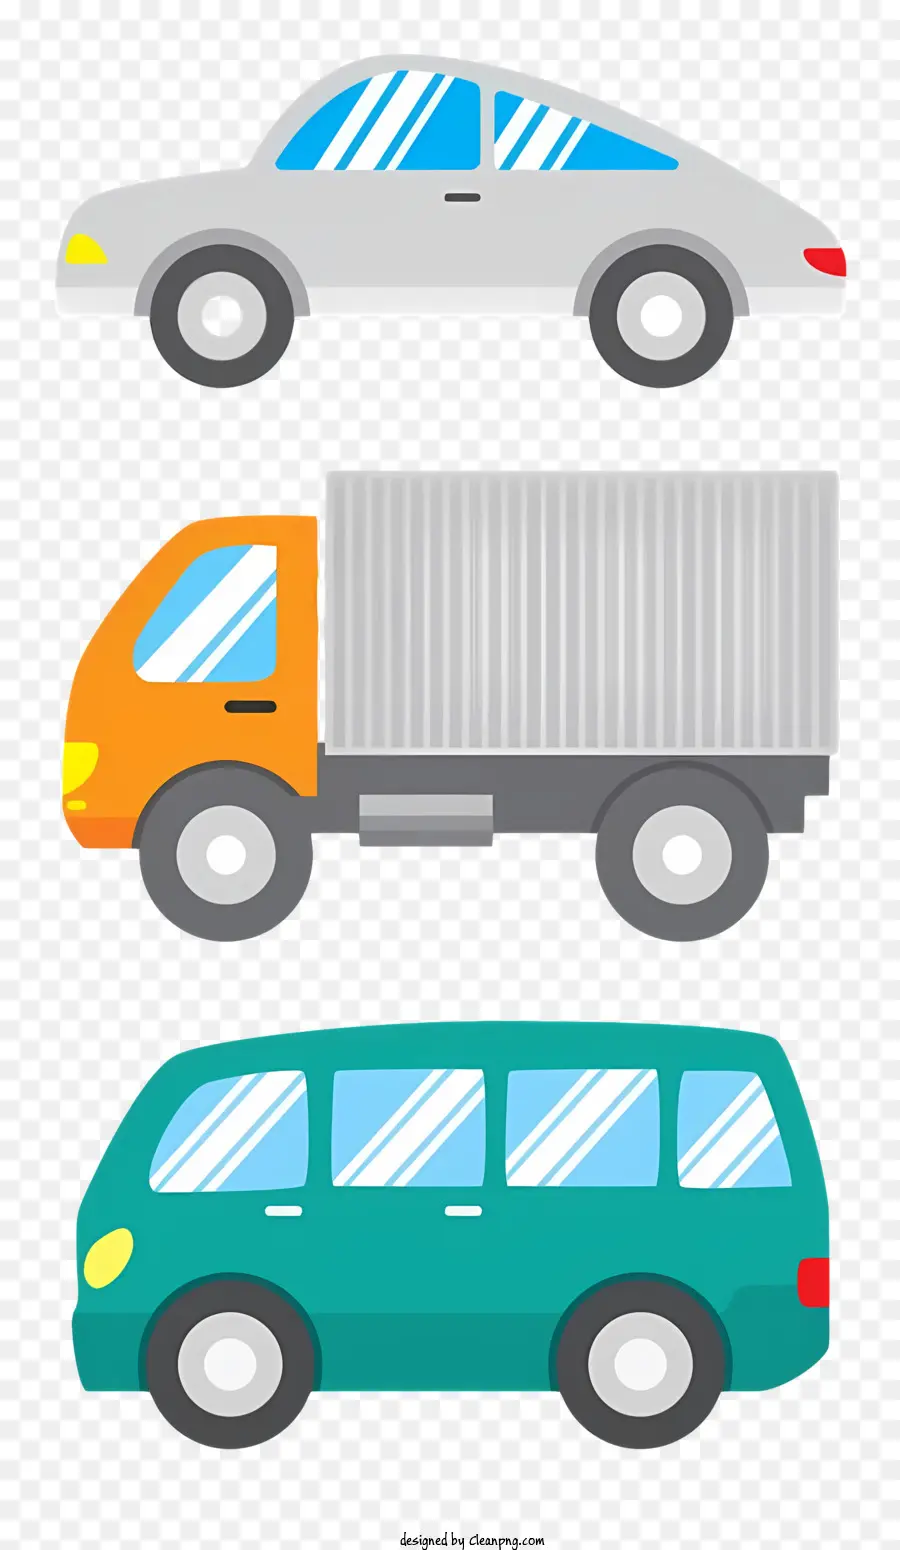 arancione - Tre auto, tra cui un camion, parcheggiate sulla superficie scura